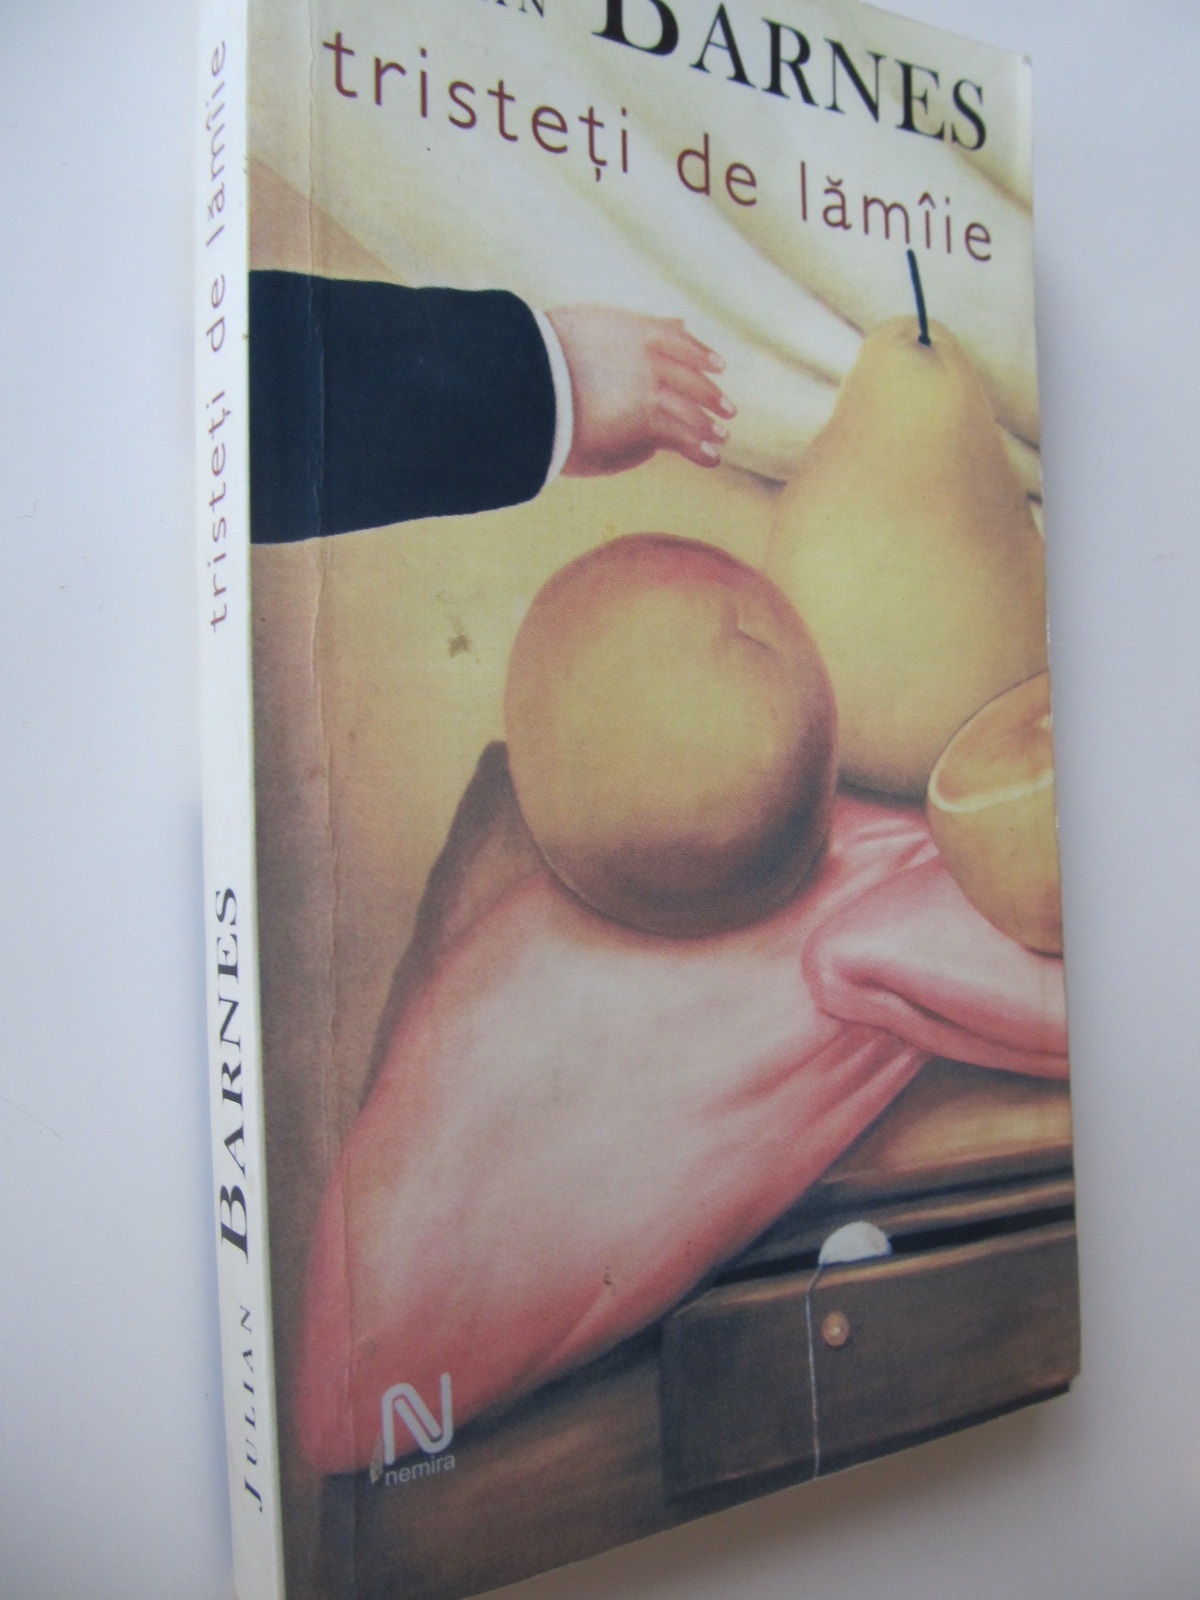 Tristeti de lamaiie - Julian Barnes | Detalii carte